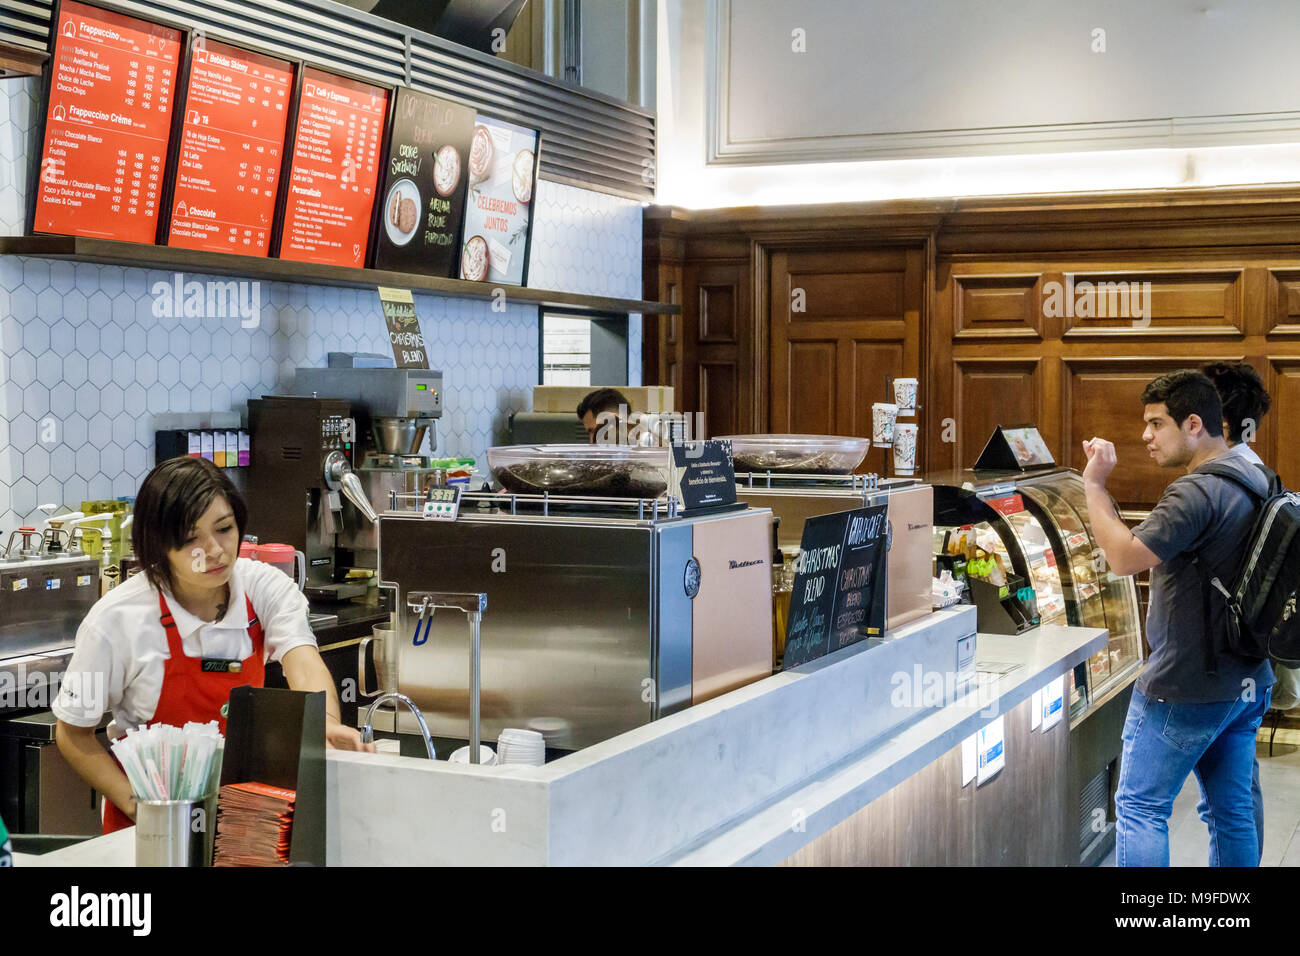 Buenos Aires Argentina,Estacion Retiro stazione ferroviaria,Starbucks Coffee,coffee house,interior Inside,donna femminile donne,uomo maschio,barista,cliente,cou Foto Stock